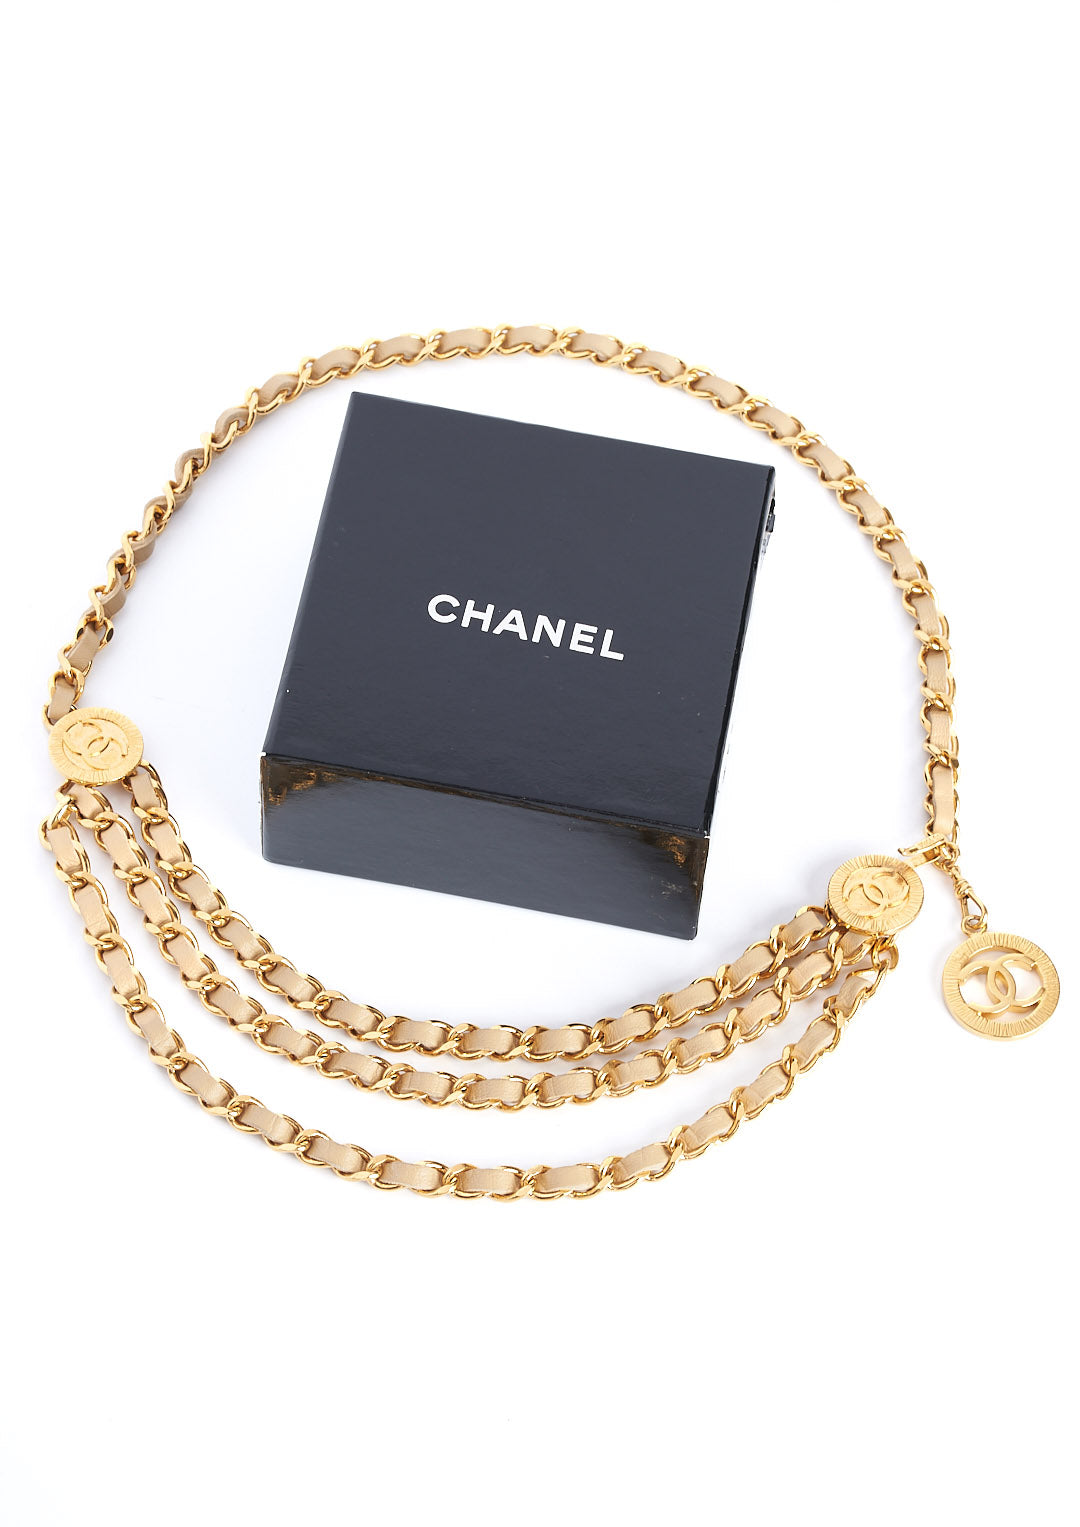 Vintage Chanel Belt - 1984